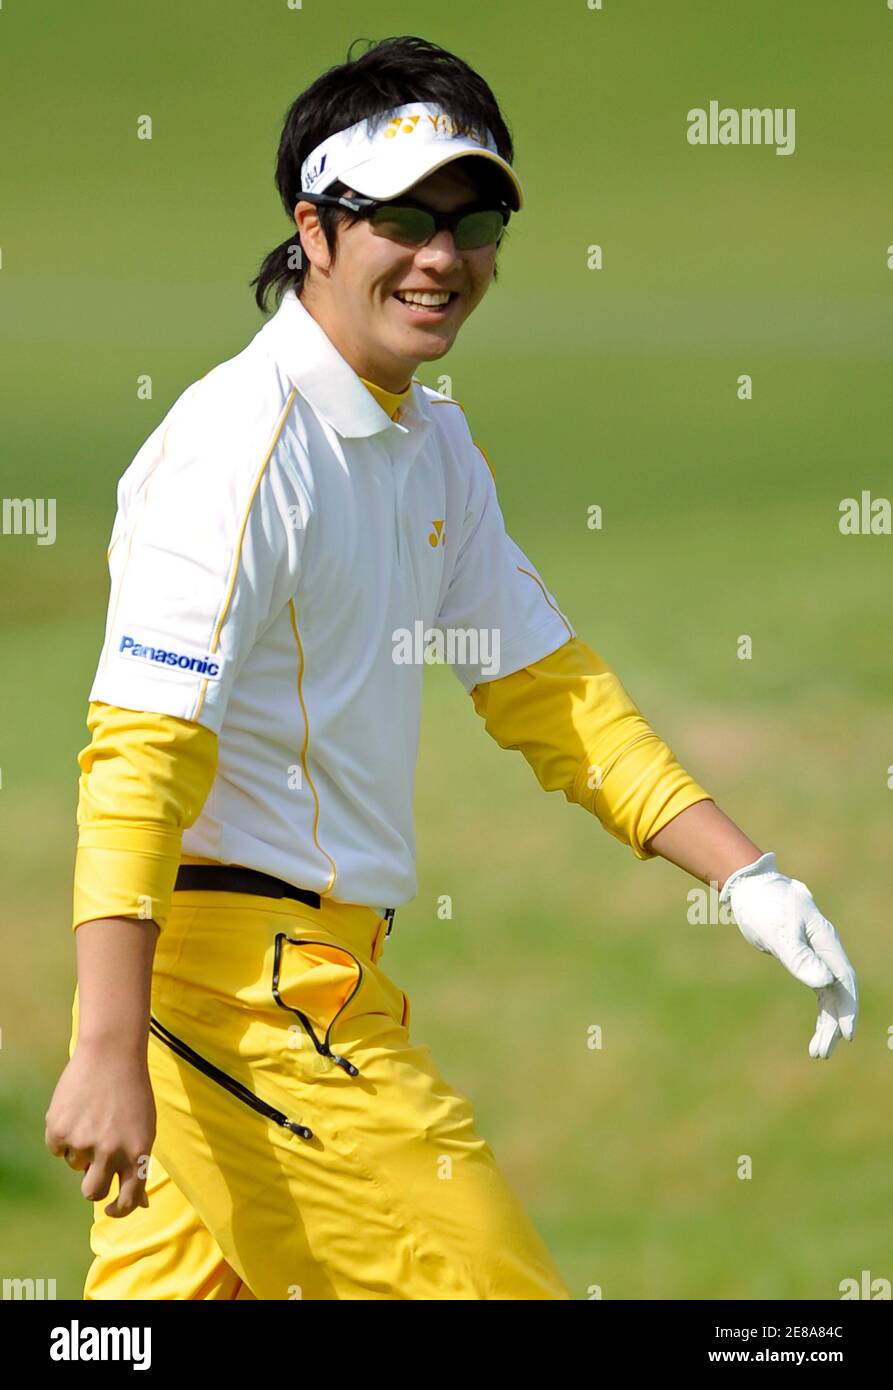 Golfer Ryo Ishikawa, 17, aus Japan, macht seinen Weg auf dem neunten Fairway während einer Übungsrunde in Vorbereitung auf das Northern Trust Open Golf Turnier in der Pacific Palisades Gegend von Los Angeles 17. Februar 2009. REUTERS/Gus Ruelas (USA) Stockfoto